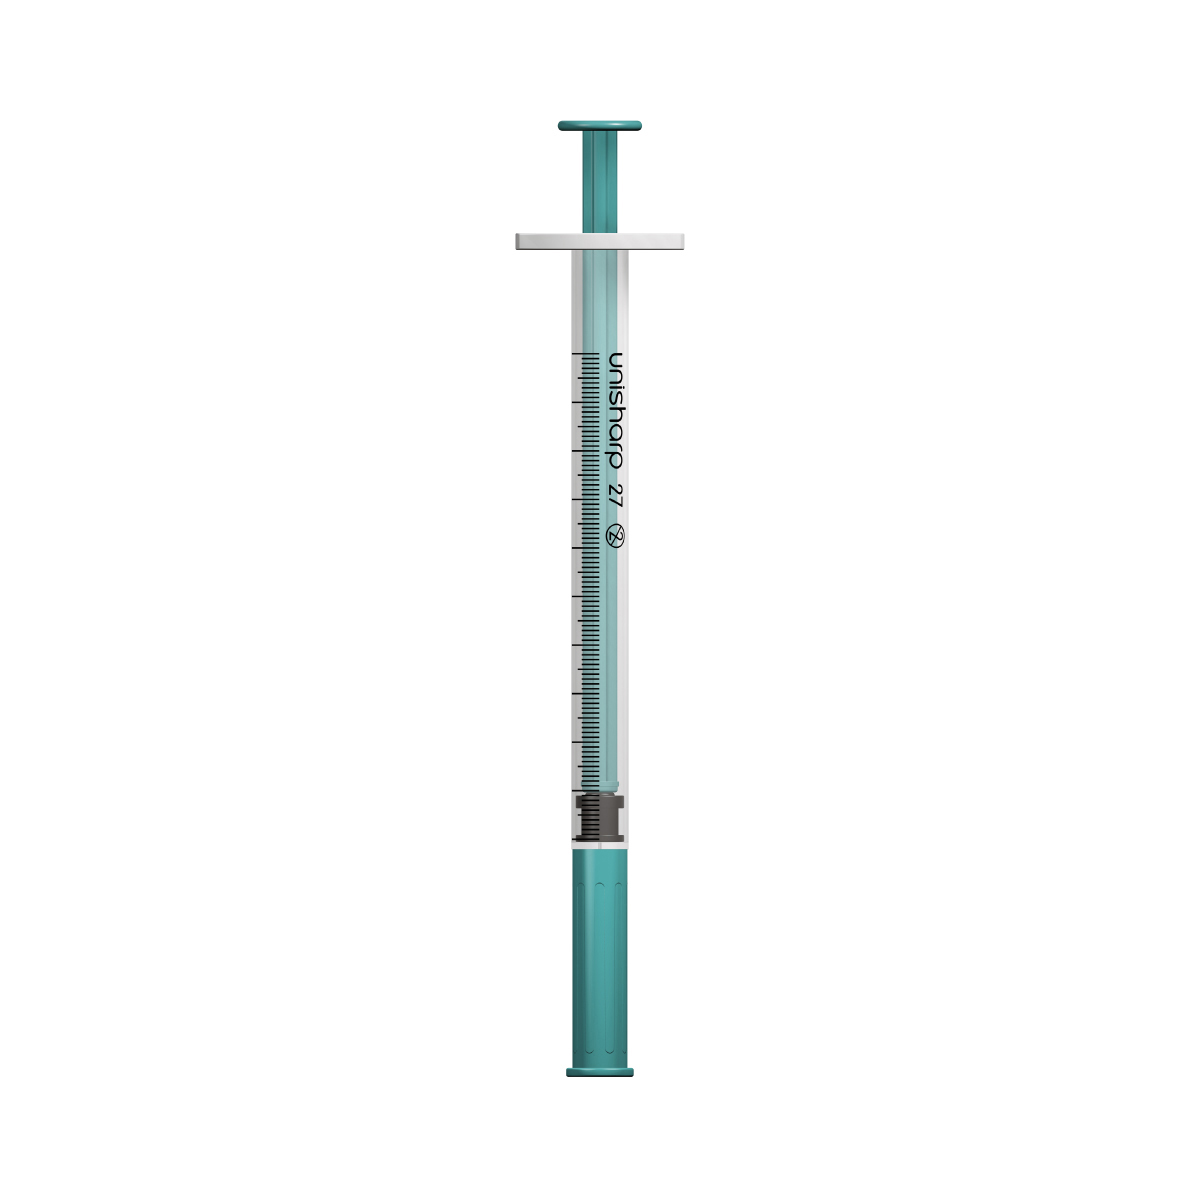 Unisharp 1ml 27G fixed needle syringe: Teal Green